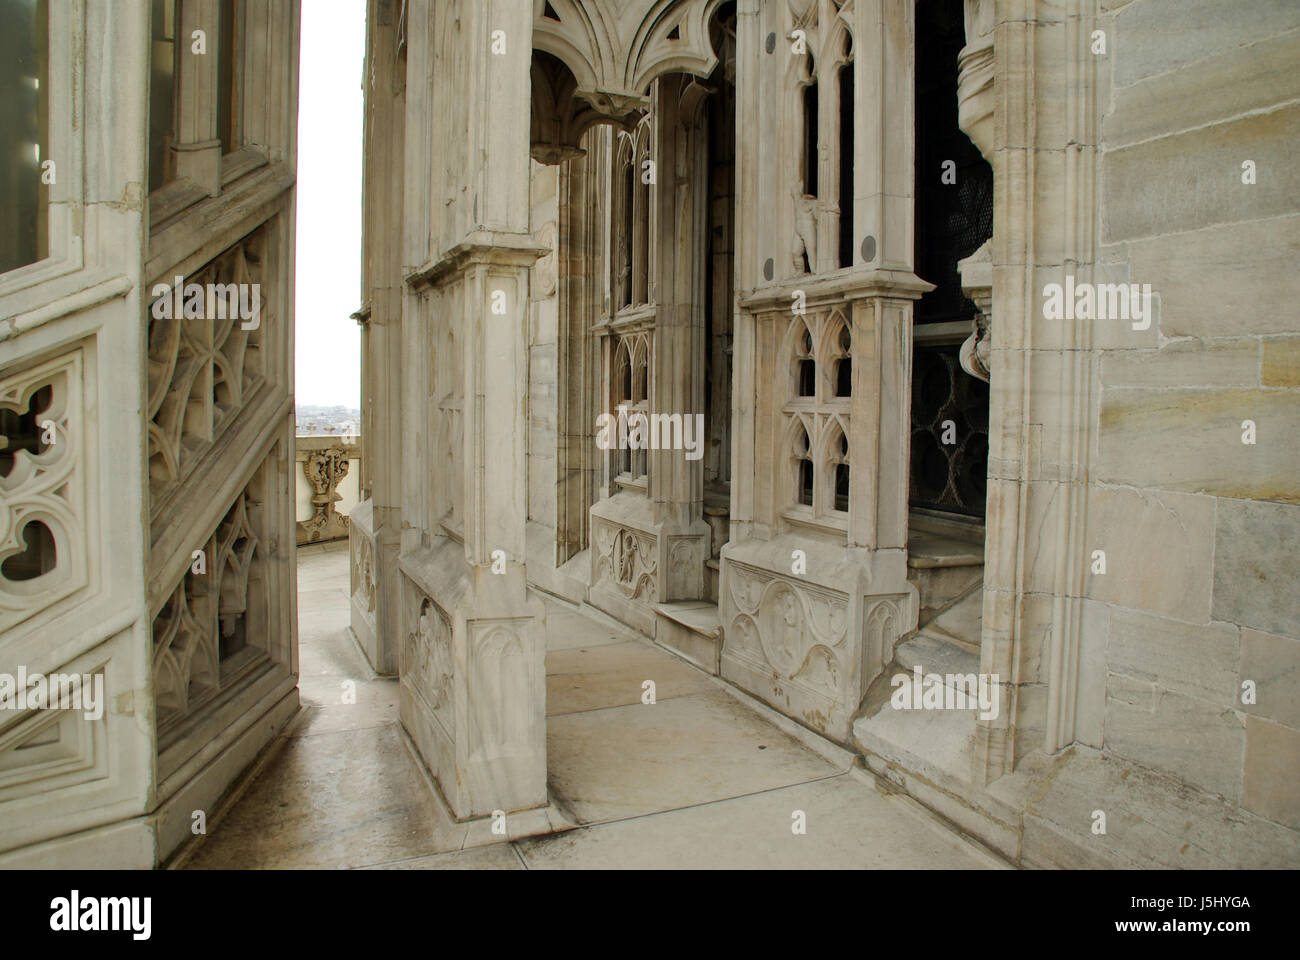 Case storiche città d'arte della città opera d'arte famosa antica cattedrale barocca Foto Stock